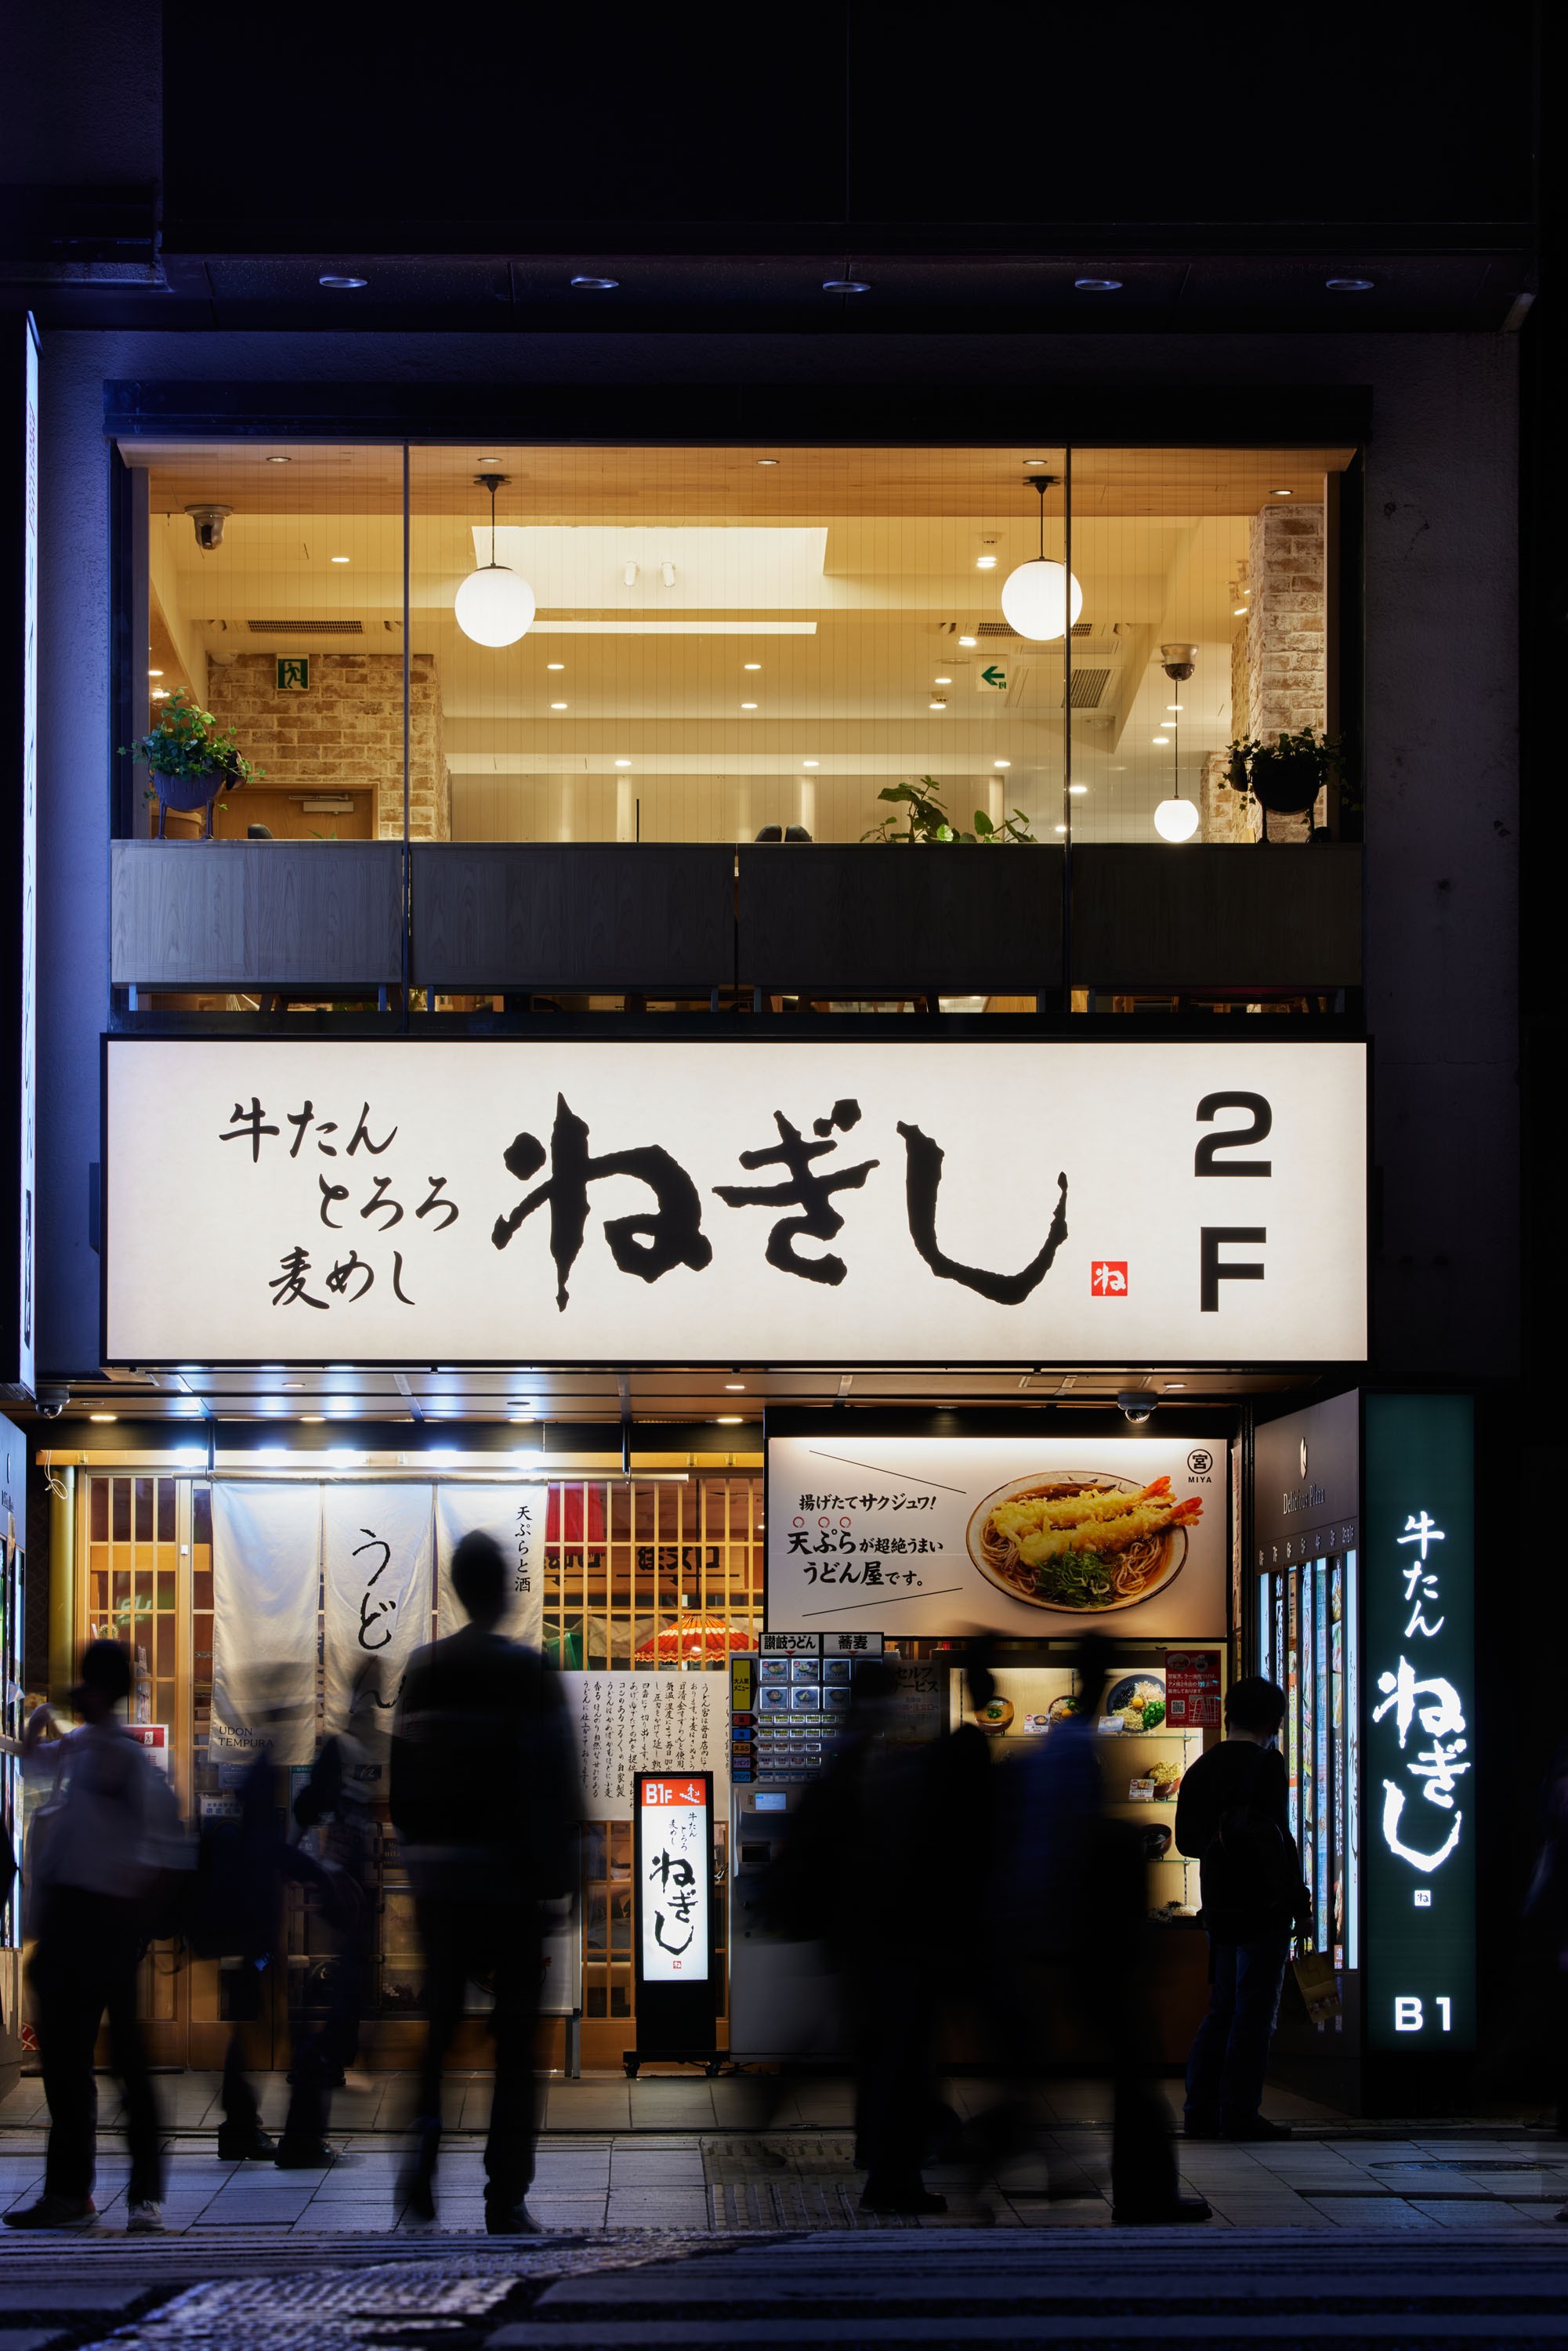 Negishi: a beef tongue (gyutan) restaurant